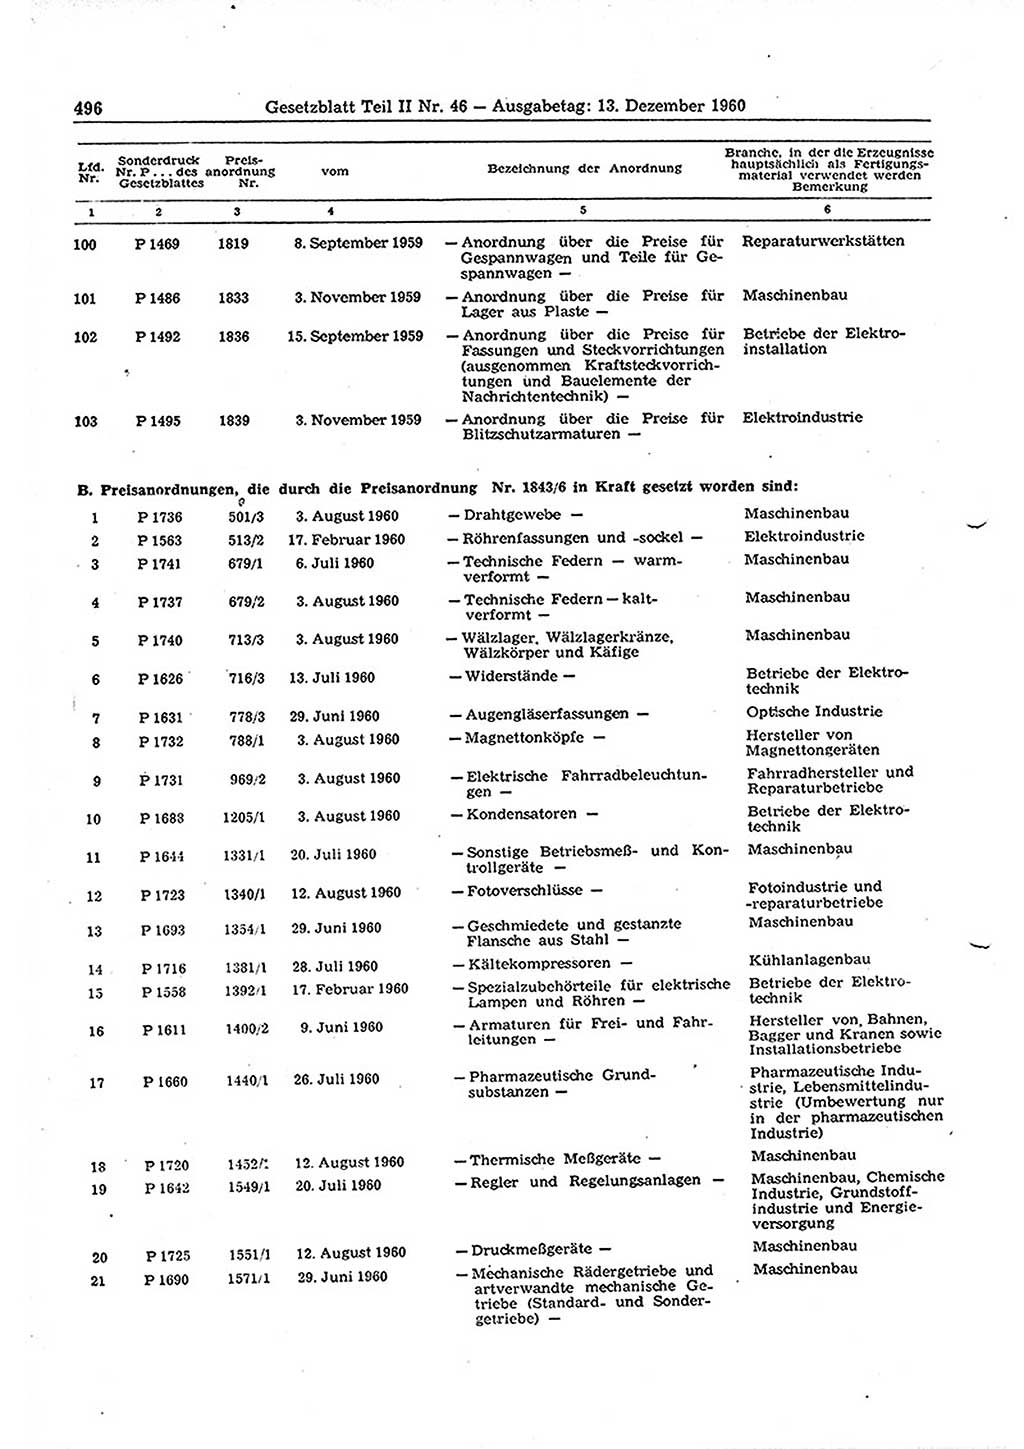 Gesetzblatt (GBl.) der Deutschen Demokratischen Republik (DDR) Teil ⅠⅠ 1960, Seite 496 (GBl. DDR ⅠⅠ 1960, S. 496)